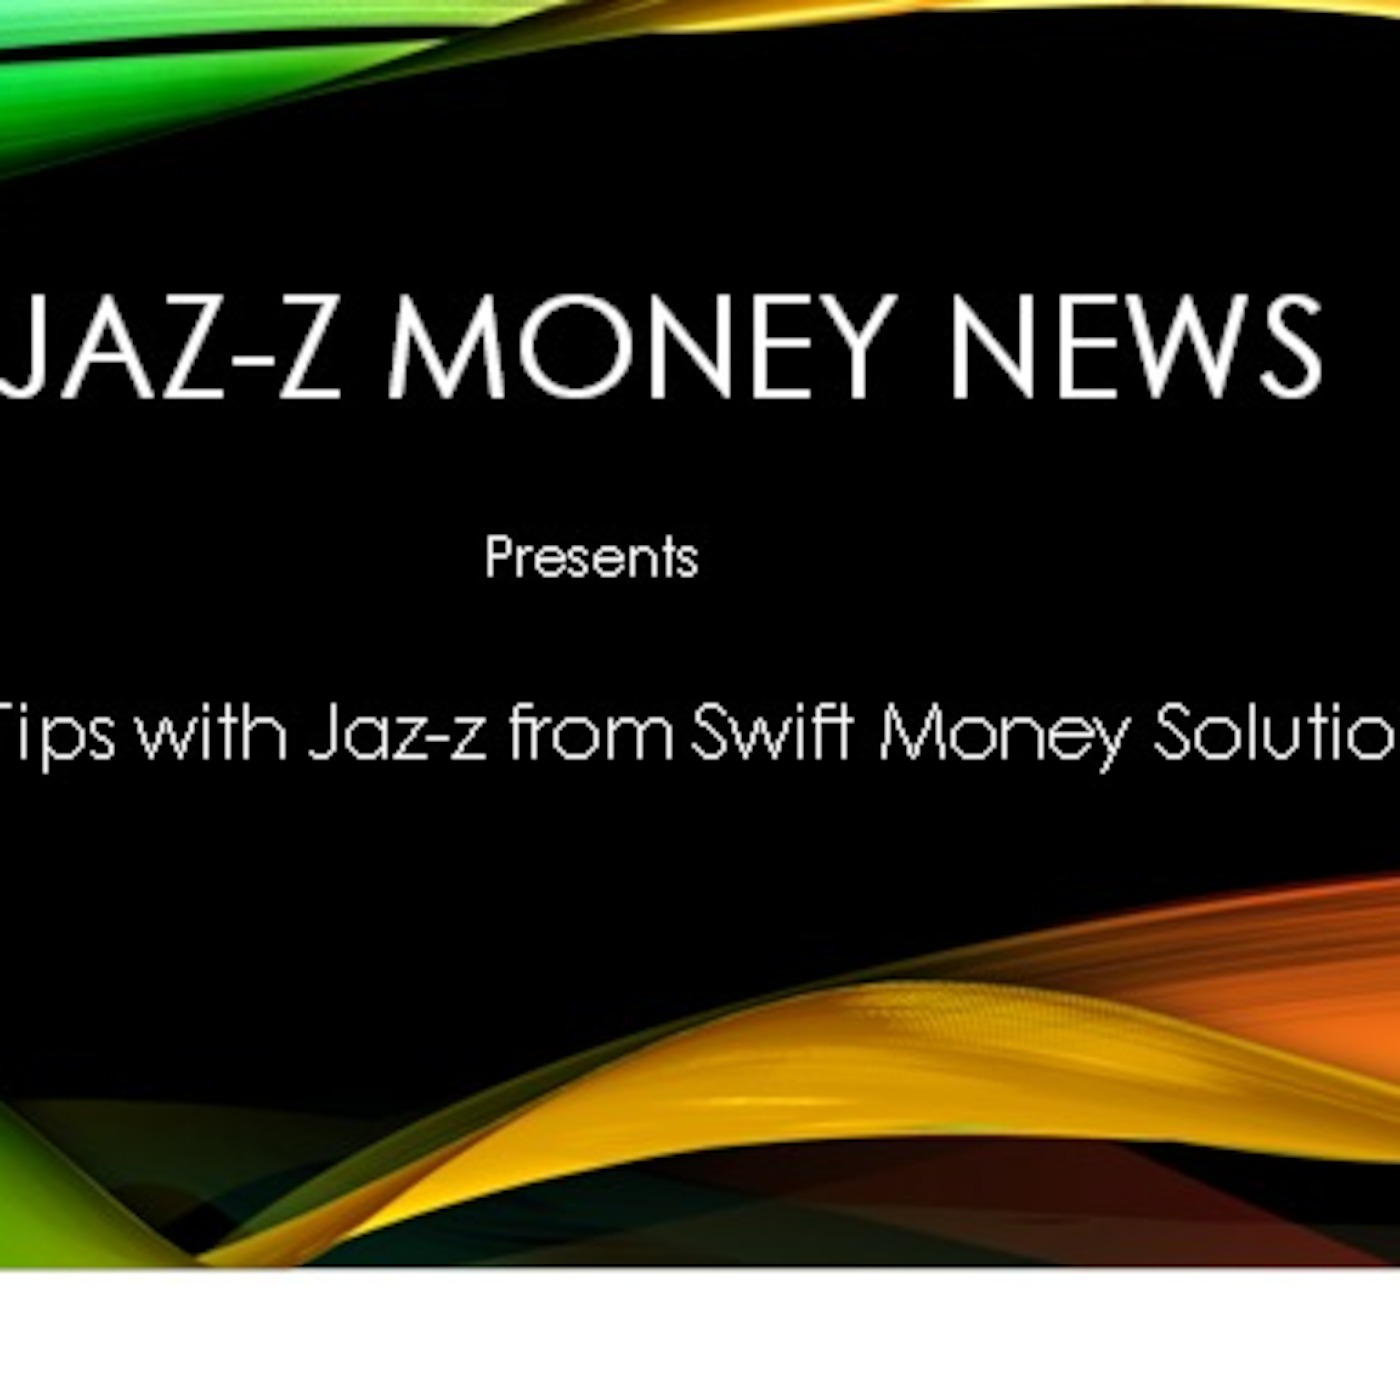 JAZ-Z & WJAZ-Z   Money Empowering Tip #13